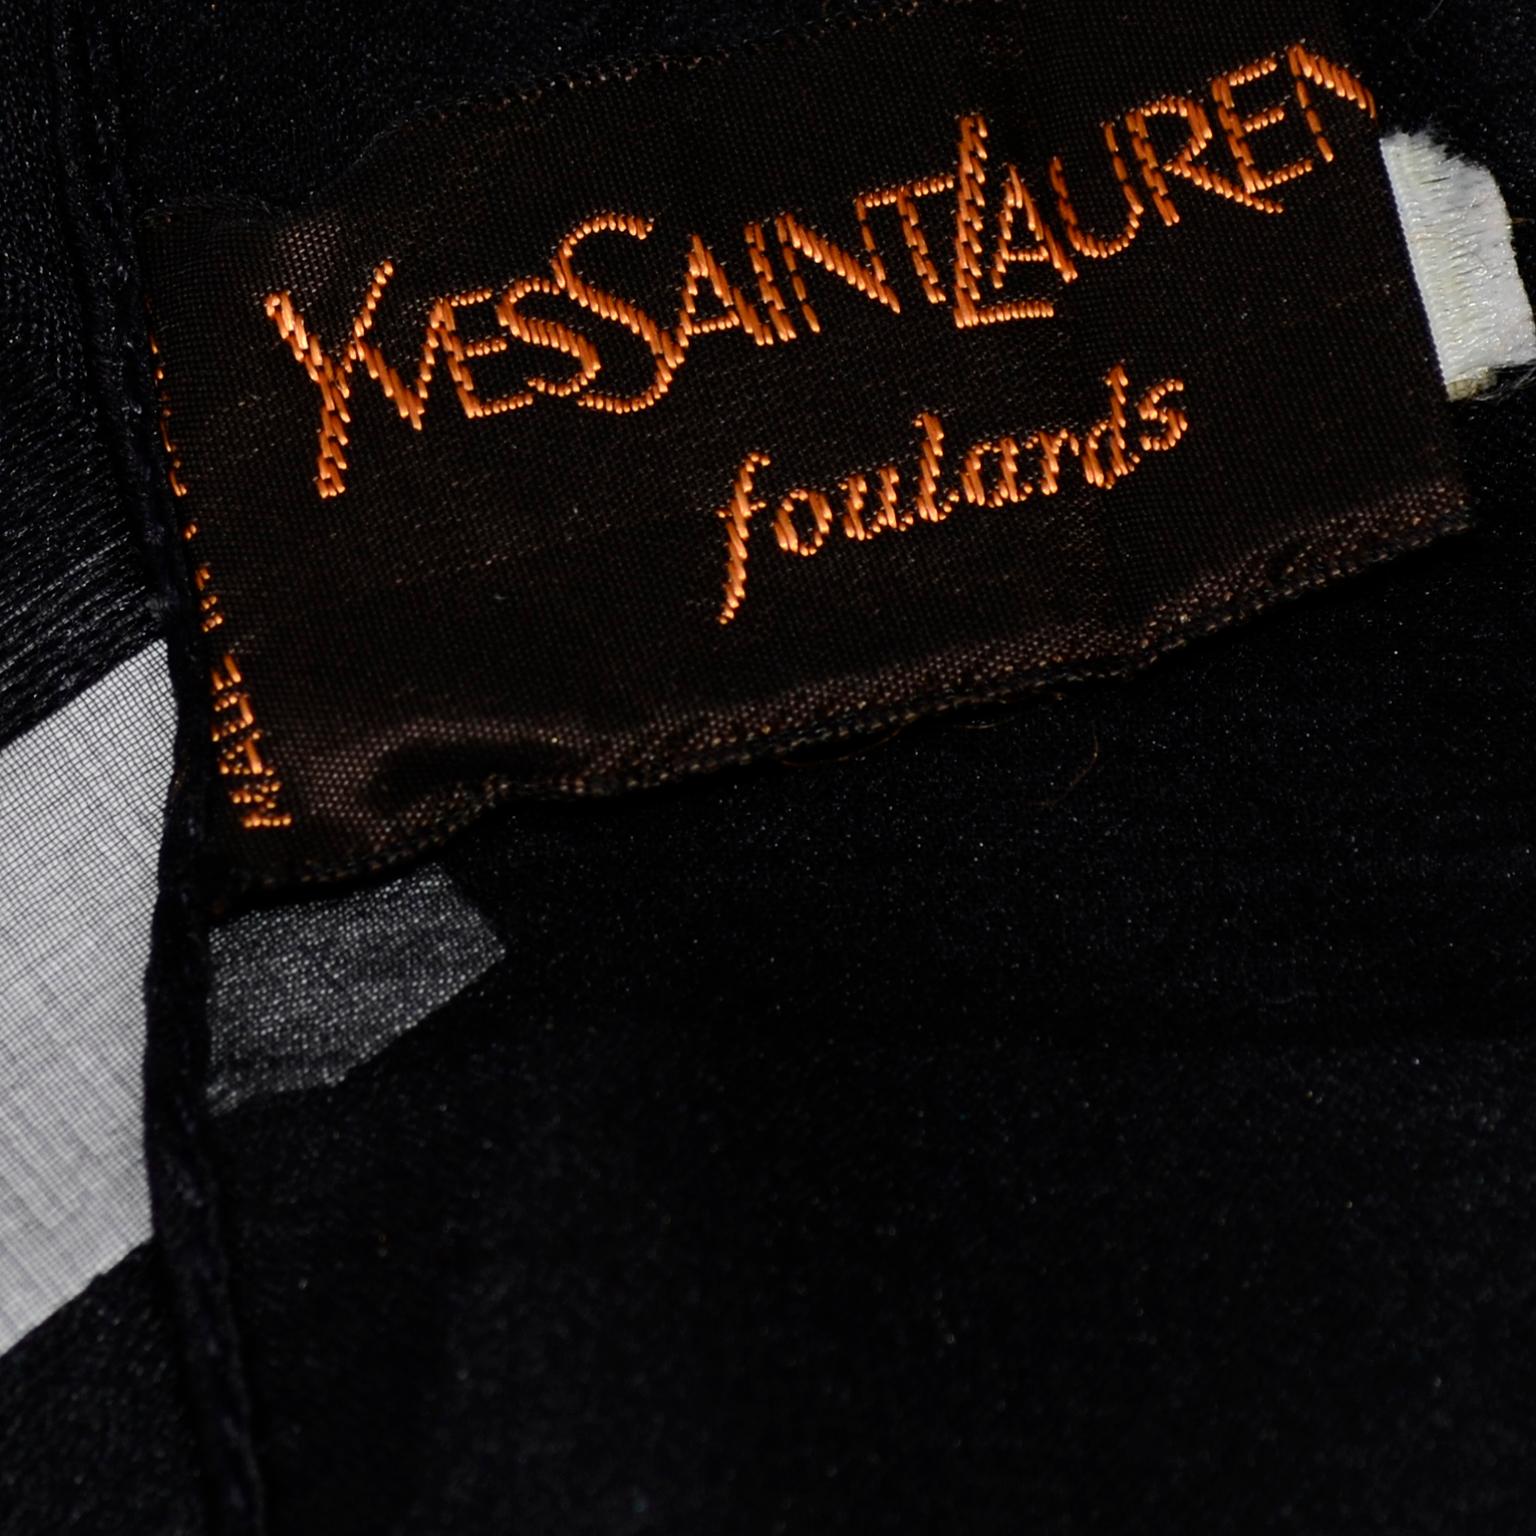 Yves Saint Laurent Foulards Silk Oversized Large Black Sheer Scarf or Shawl Wrap 3